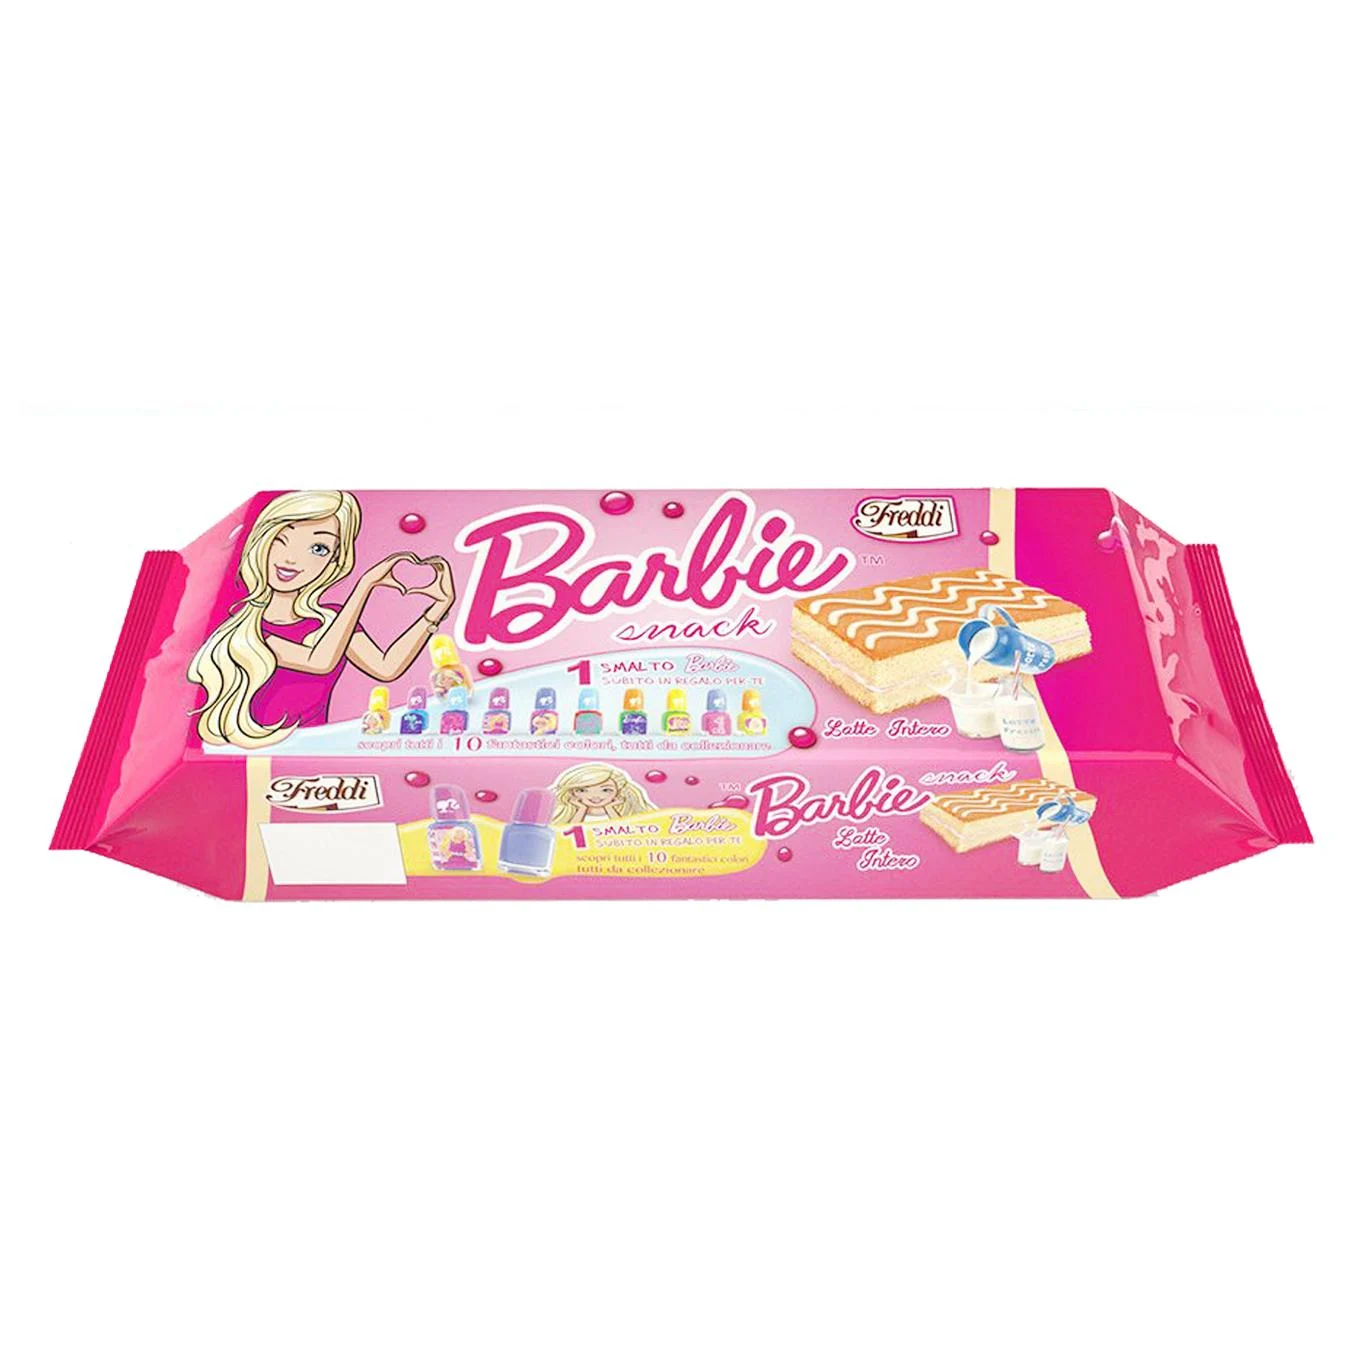 Barbie Snack Milk Flavour 250g